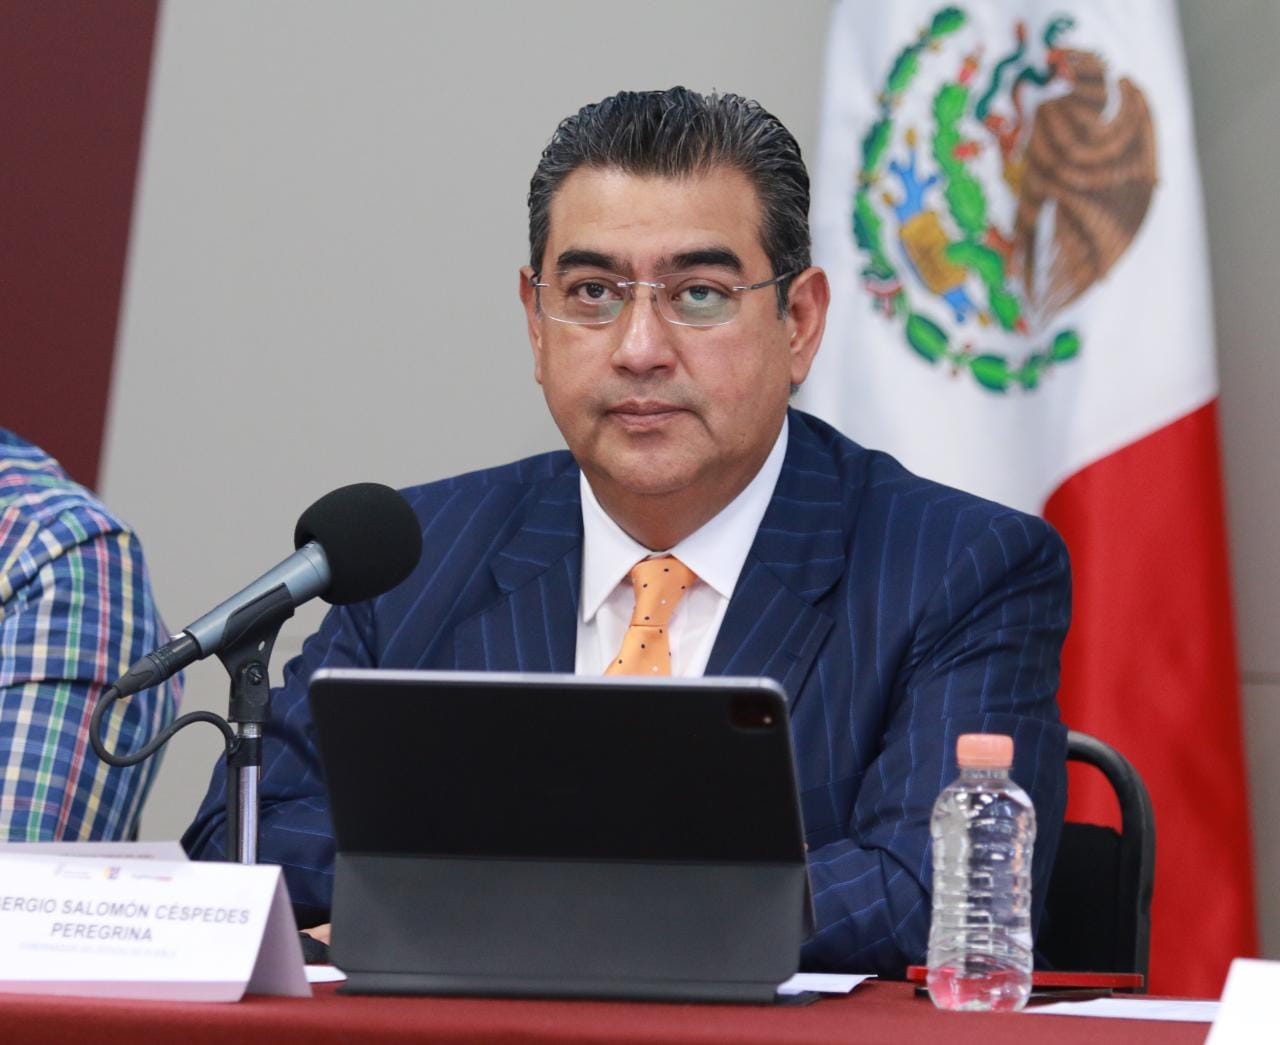 Favorecerá gobierno estatal a municipios con videocámaras para fortalecer seguridad, anuncia Sergio Salomón